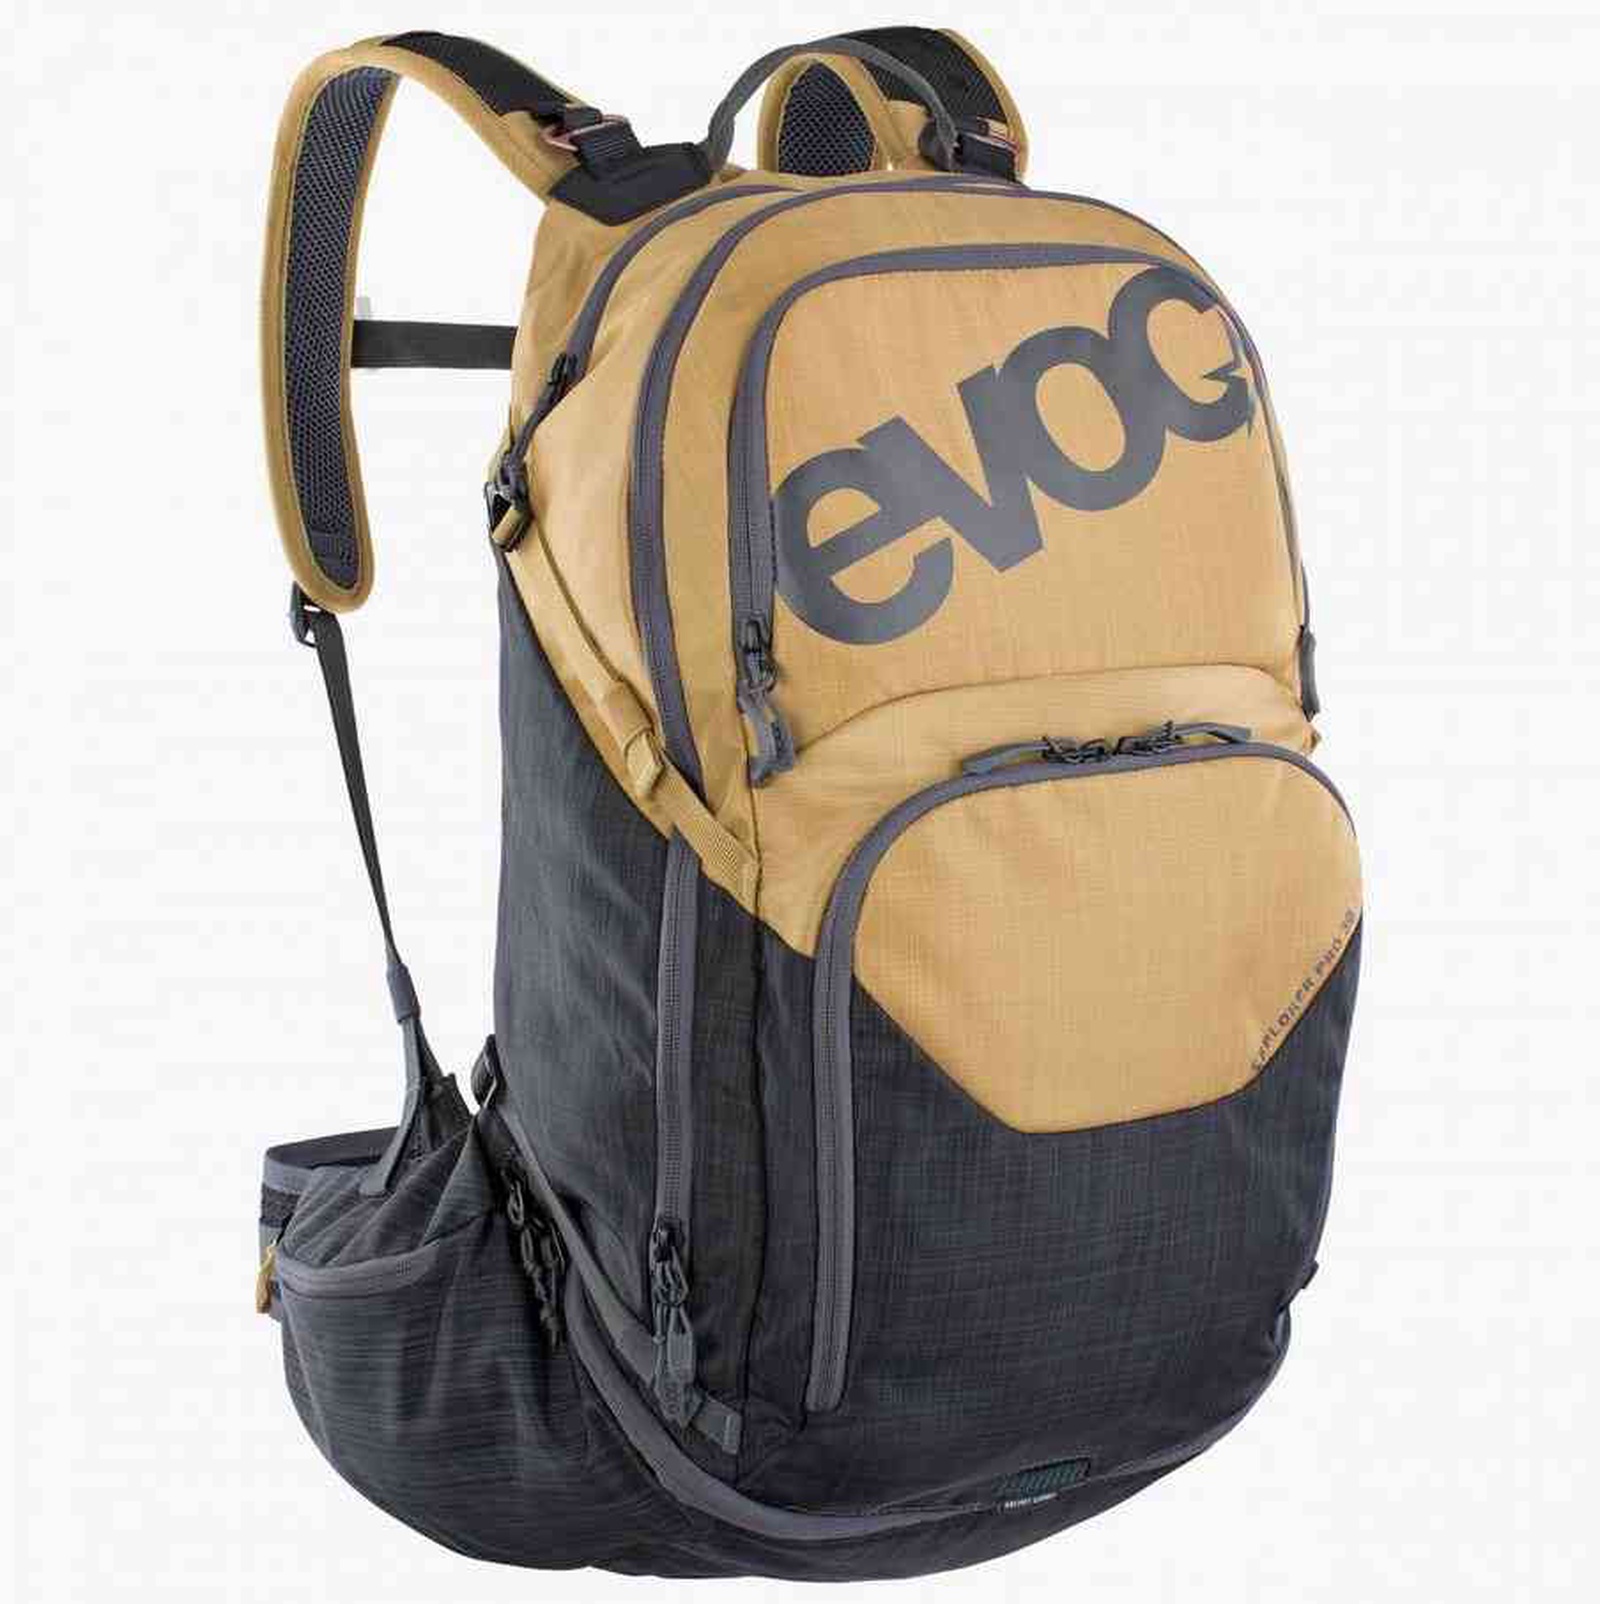 Explorer Pro 30L Backpack